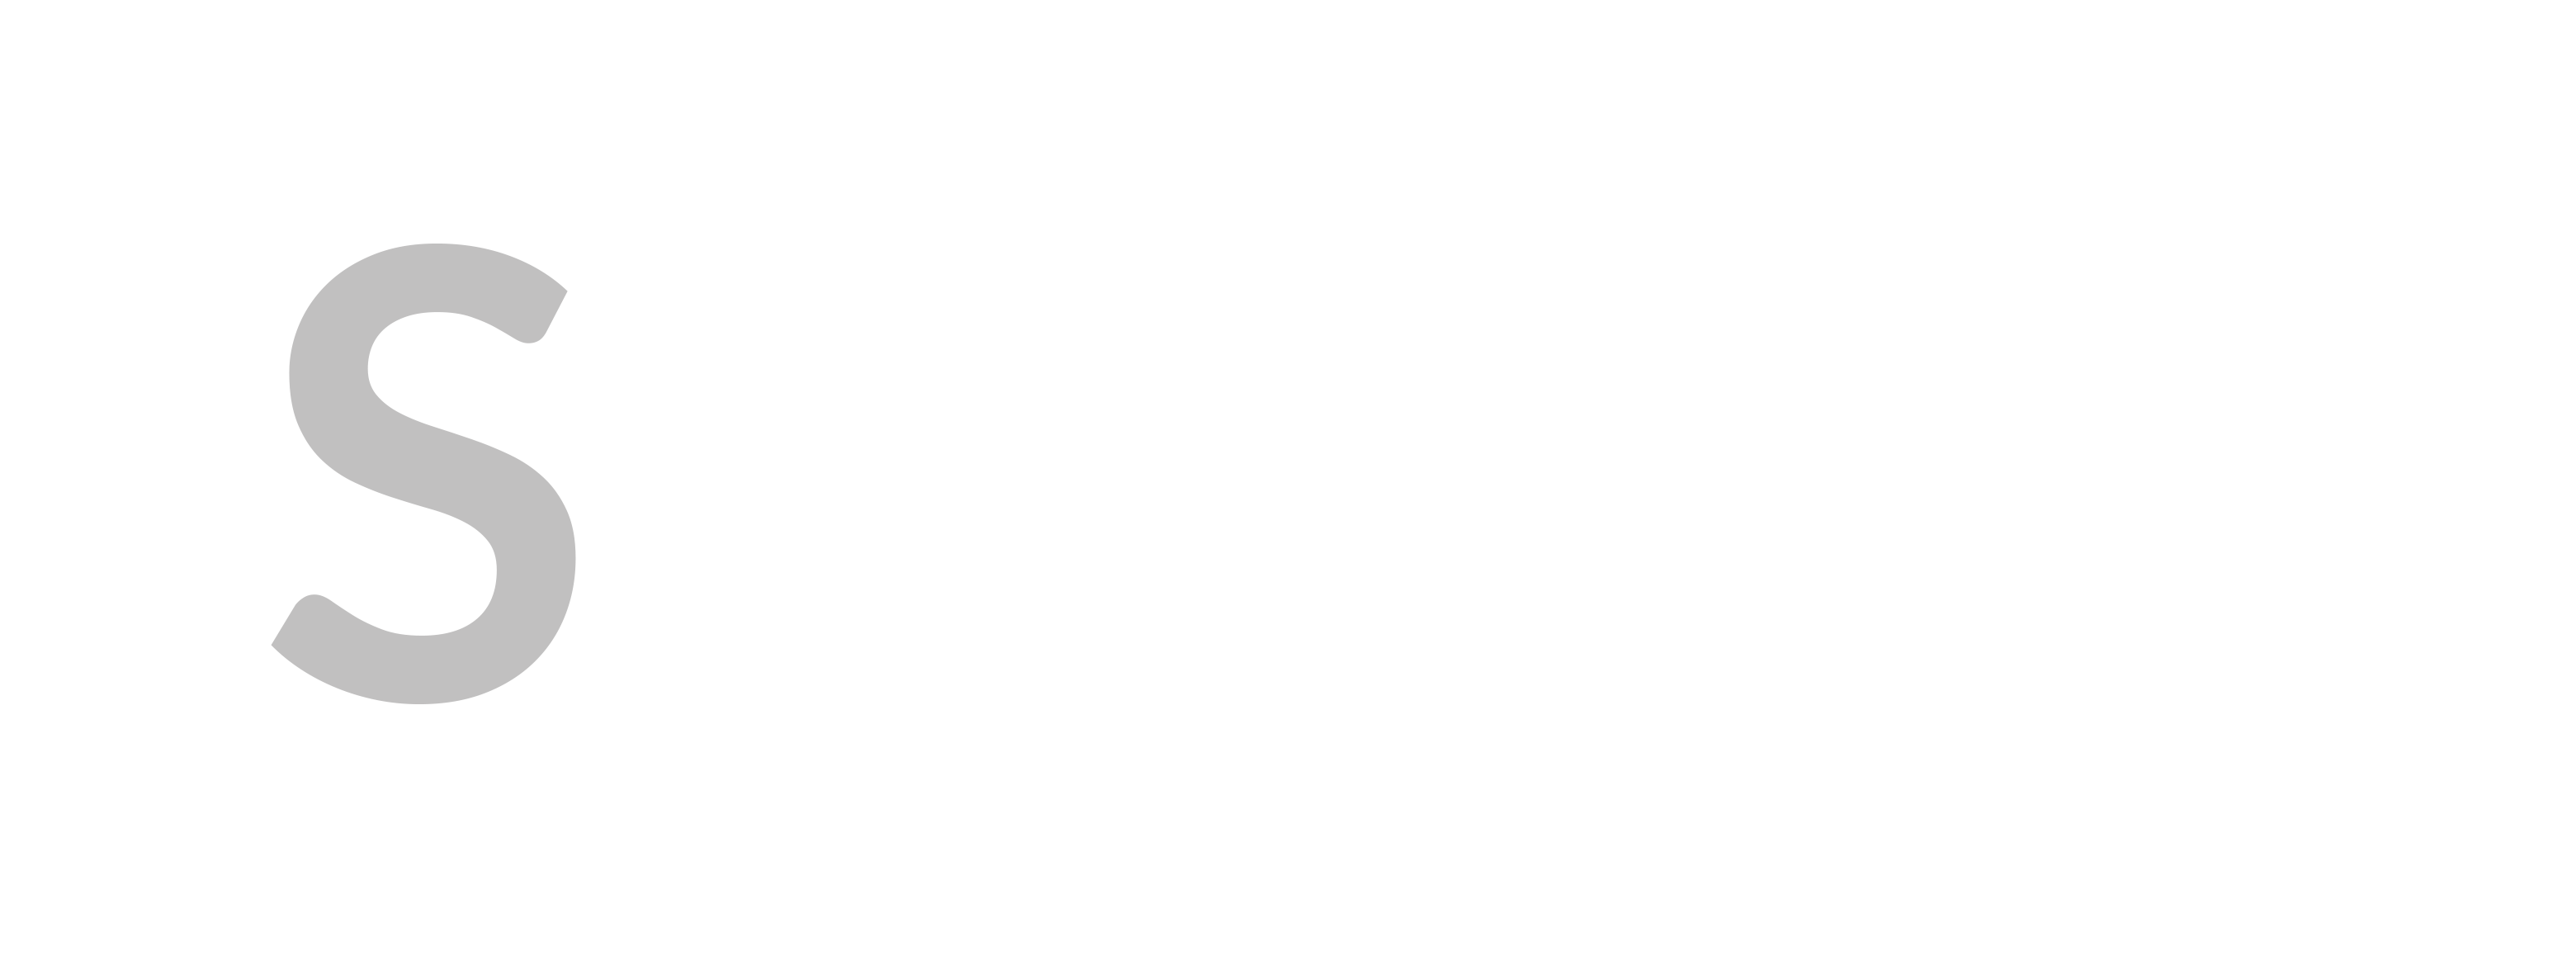 S-PACS